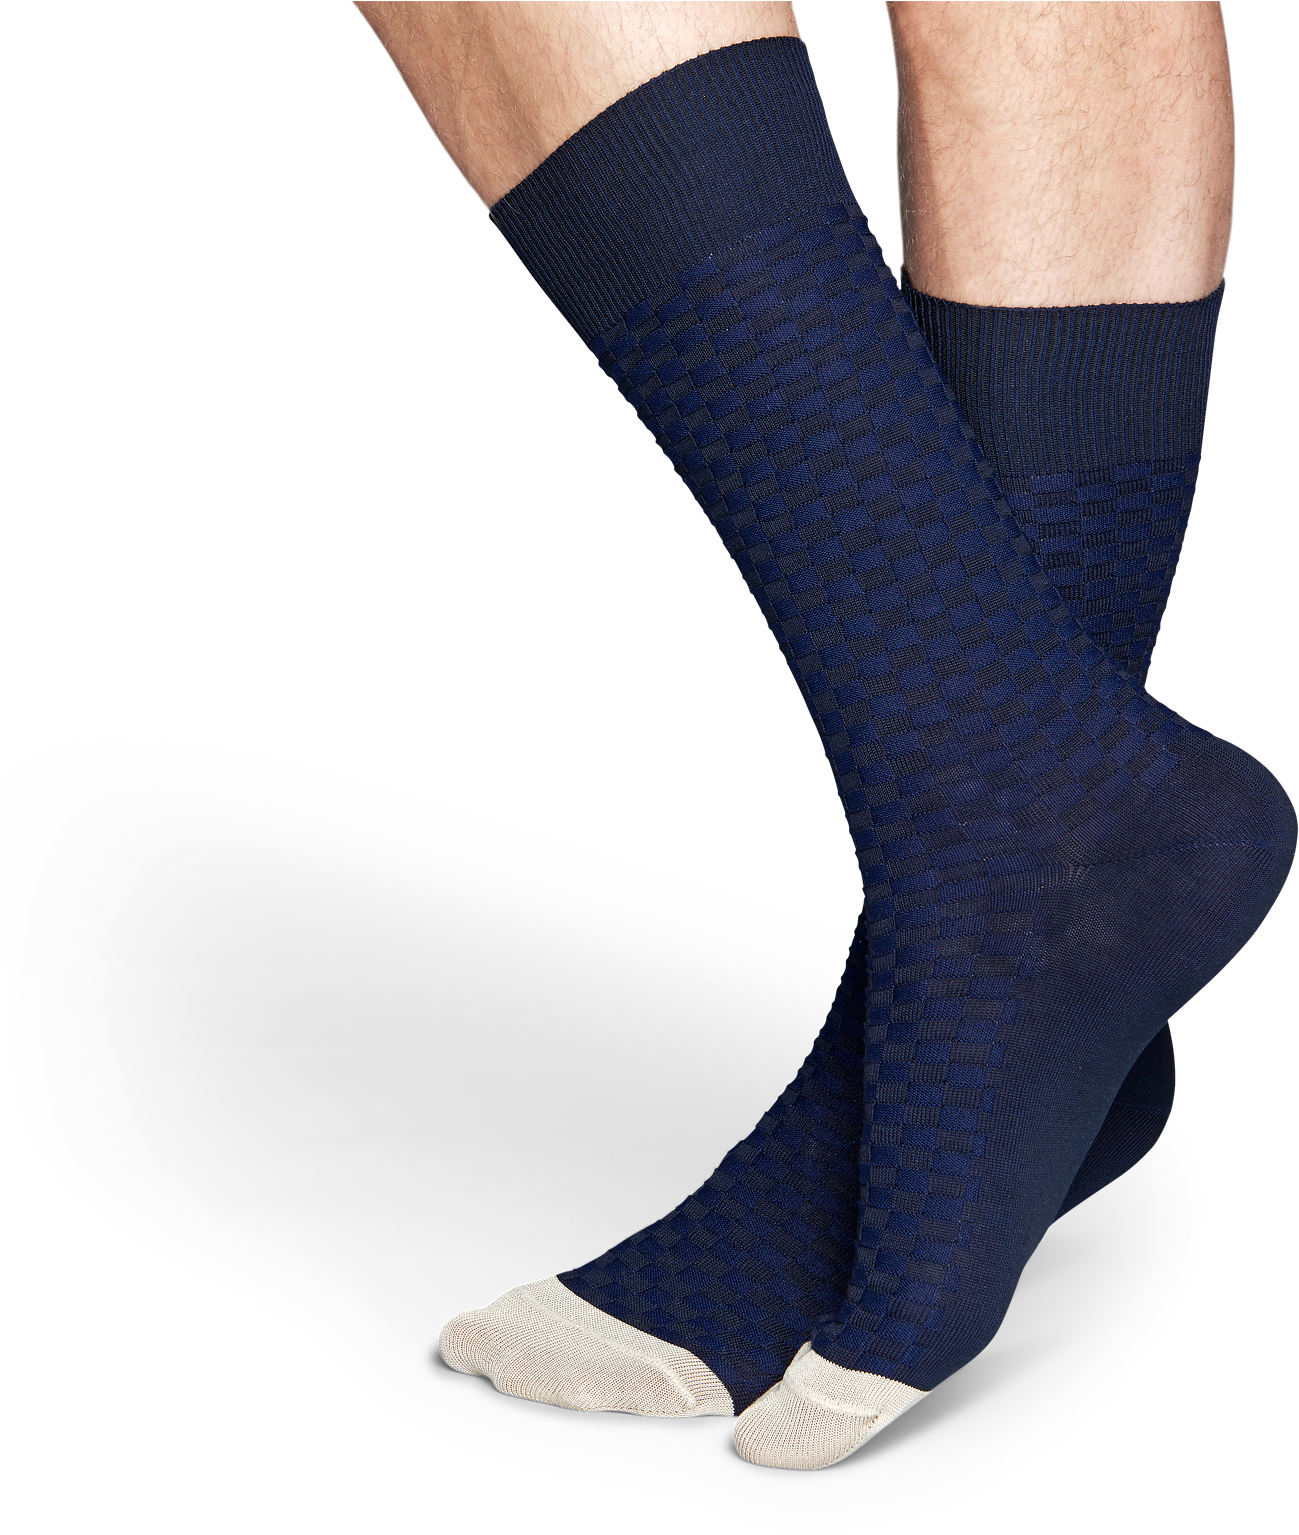 Designer Moss Knit Socks For Mens - Sock (1460x1600), Png Download